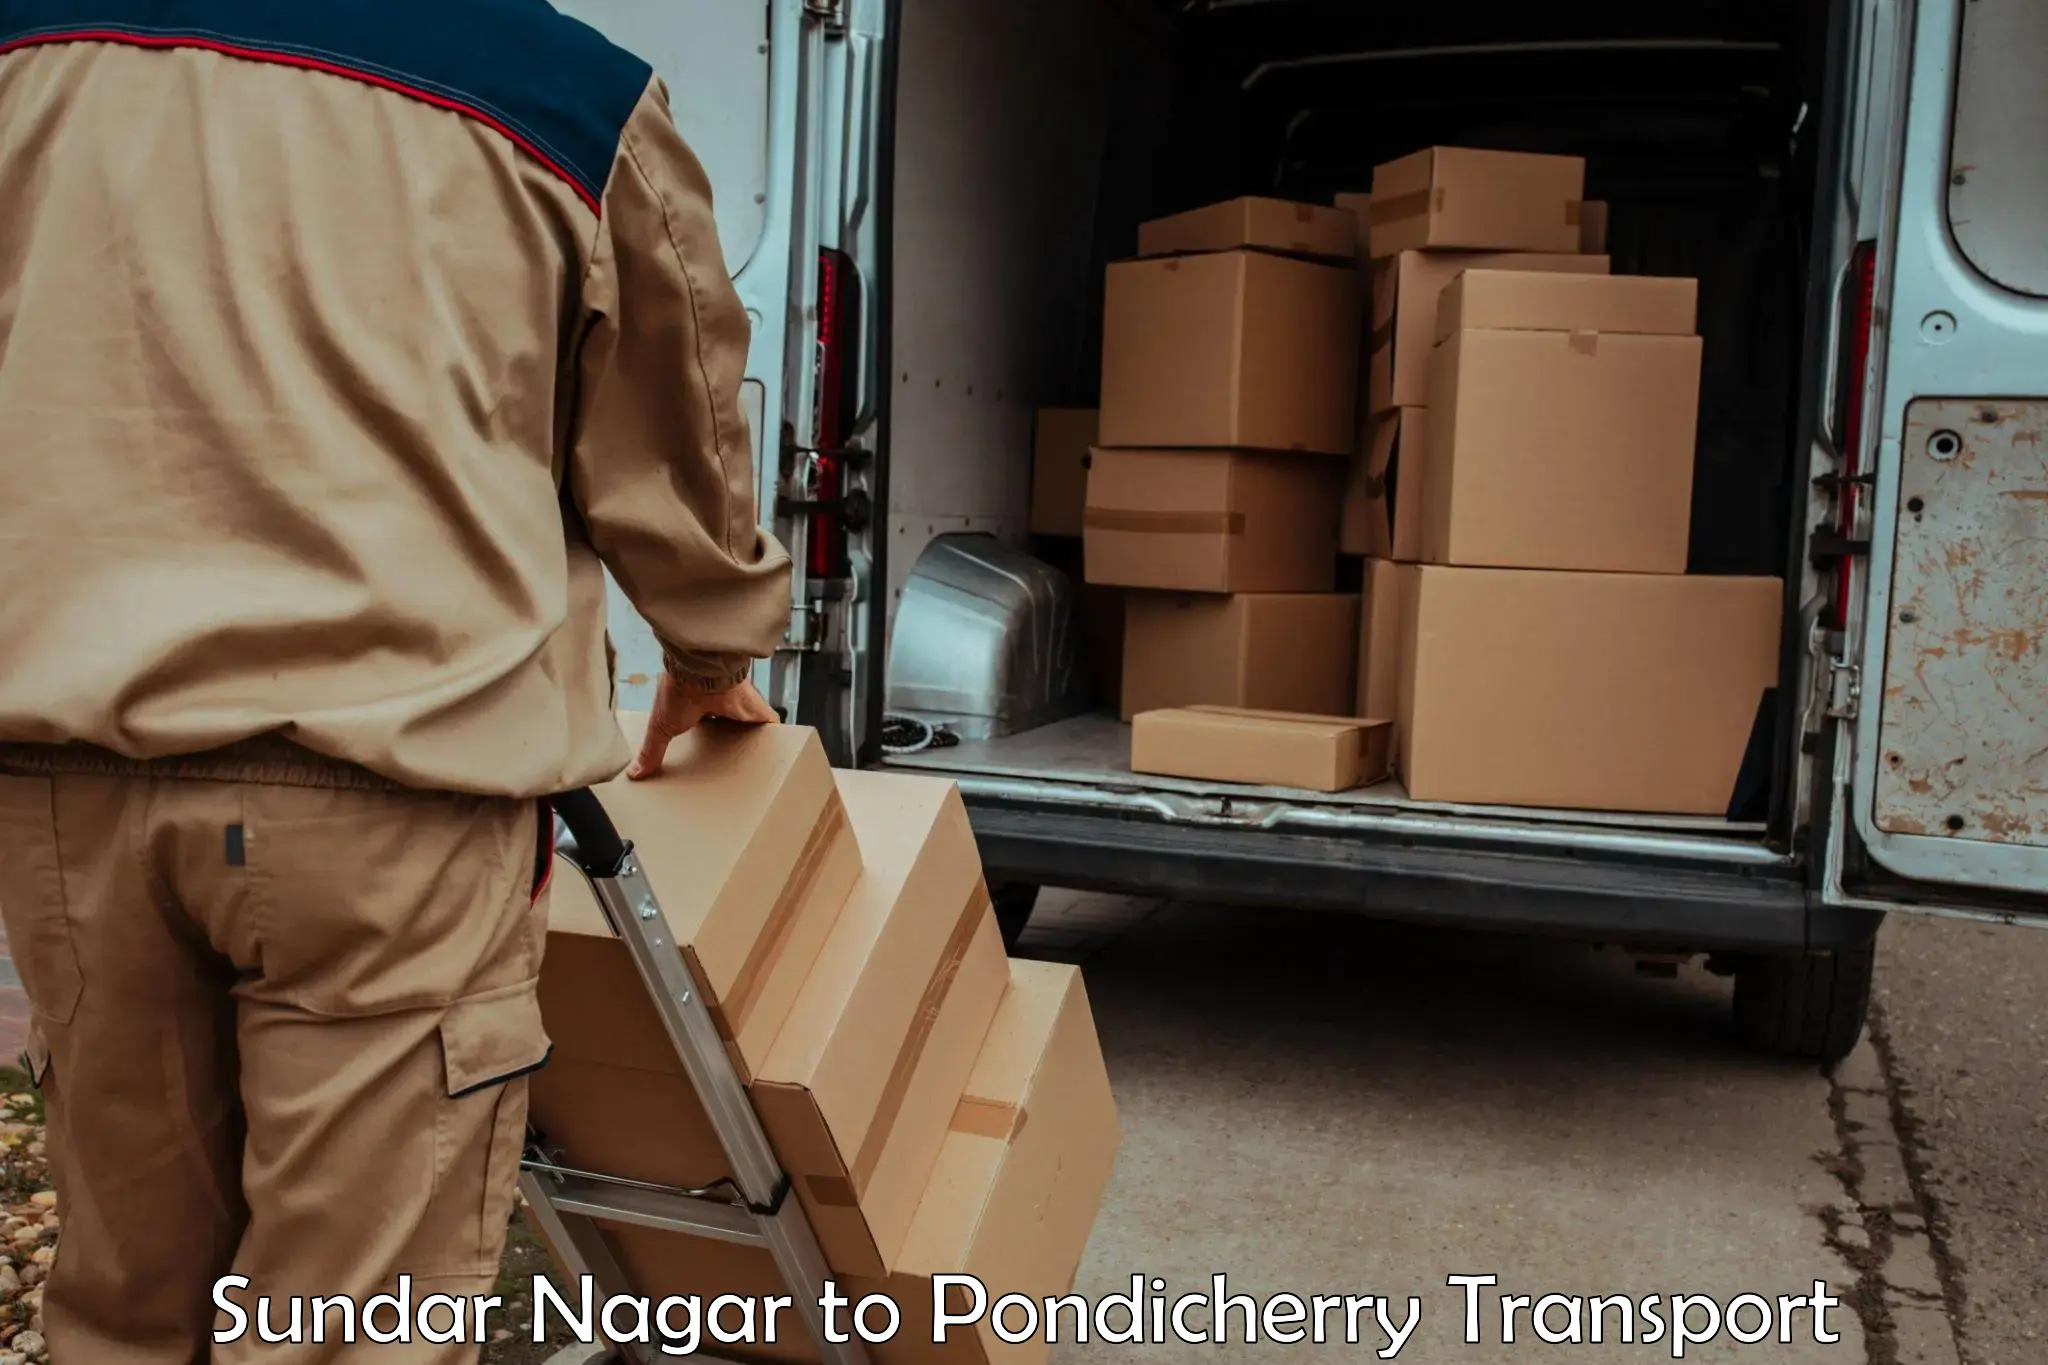 Interstate transport services Sundar Nagar to Pondicherry